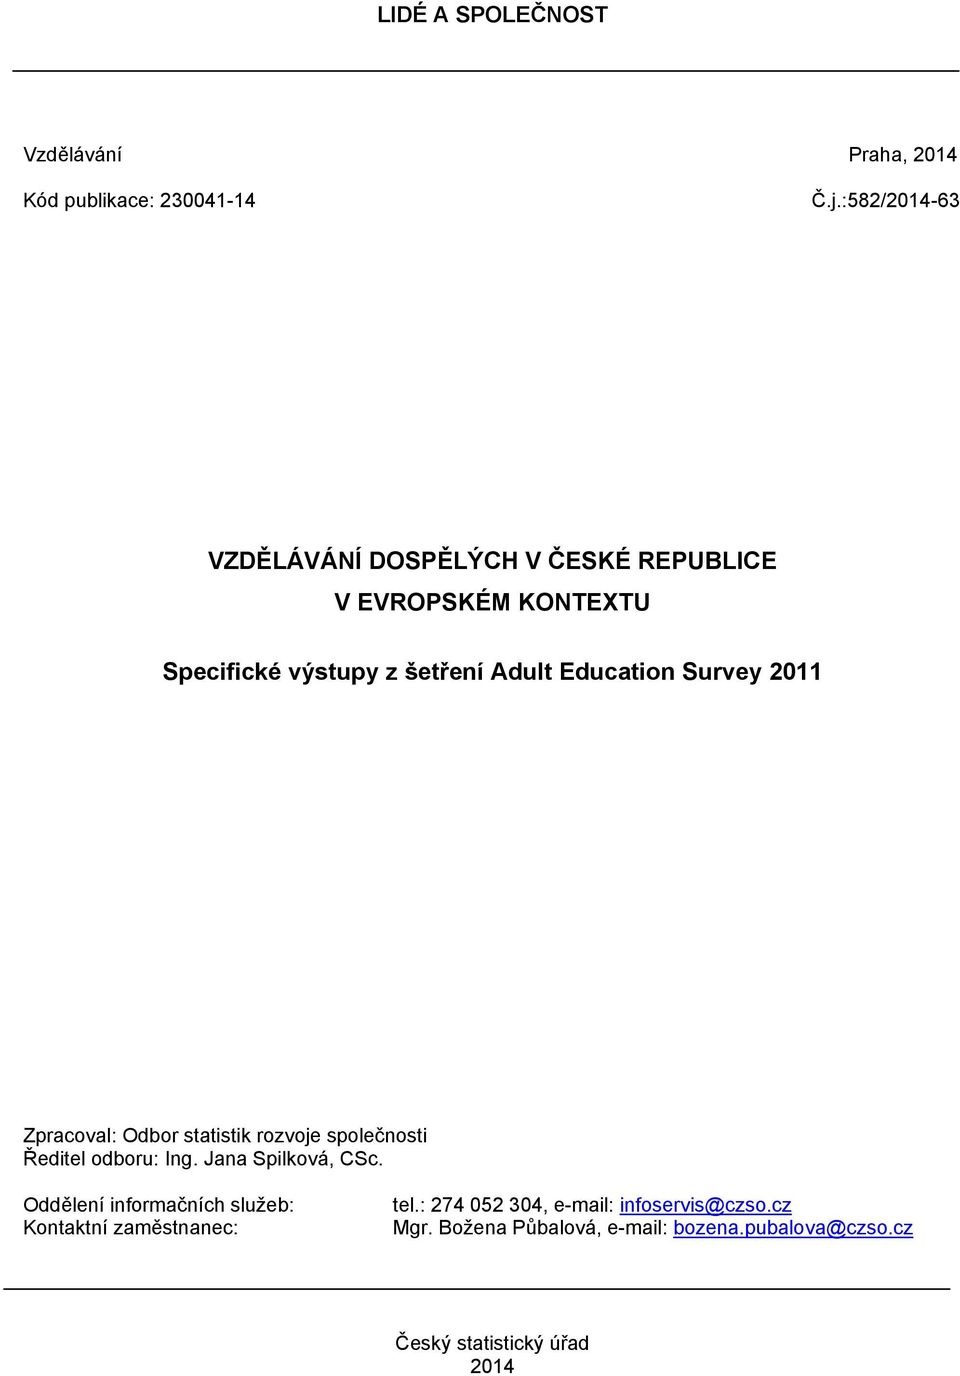 Education Survey 2011 Zpracoval: Odbor statistik rozvoje společnosti Ředitel odboru: Ing. Jana Spilková, CSc.